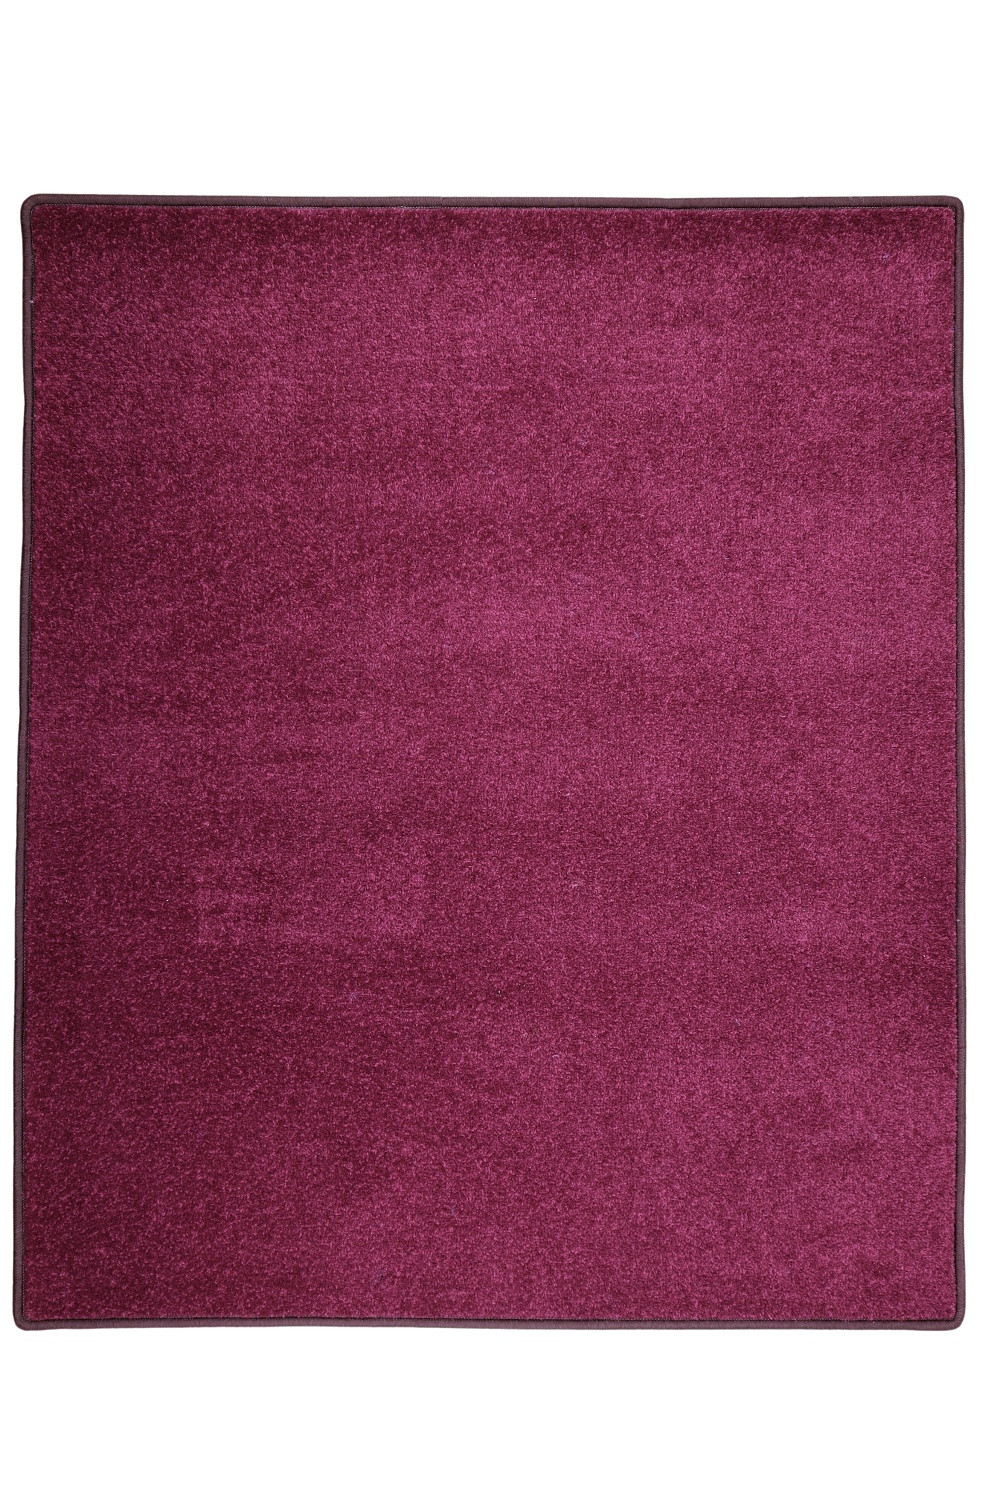 Kusový koberec Eton fialový 48 - 120x160 cm Vopi koberce 